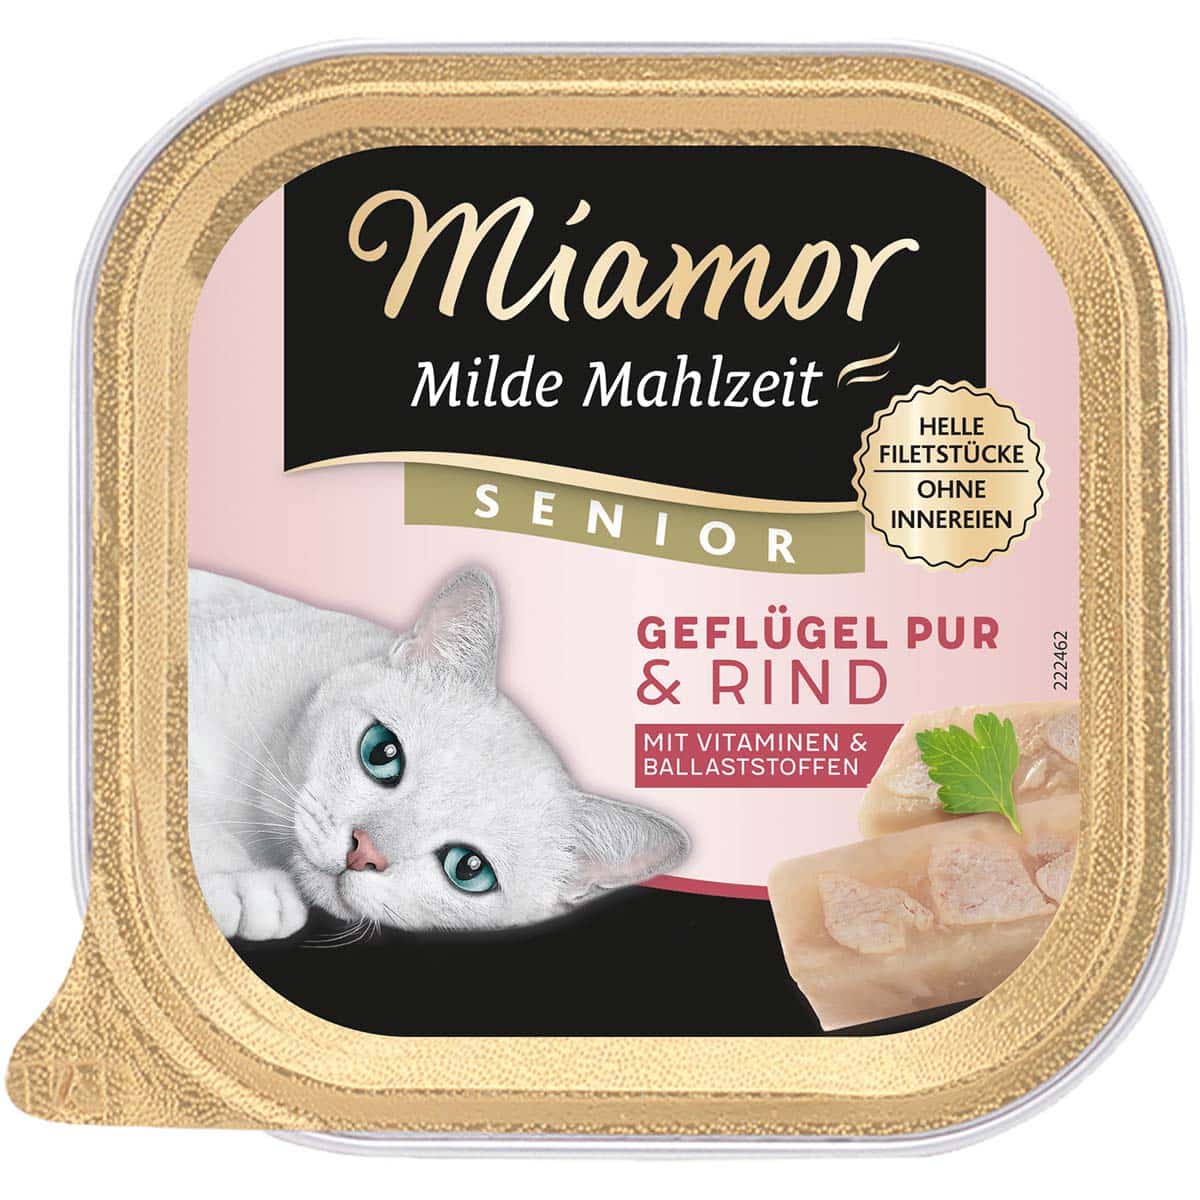 Miamor Milde Mahlzeit Senior Geflügel Pur & Rind 16x100g